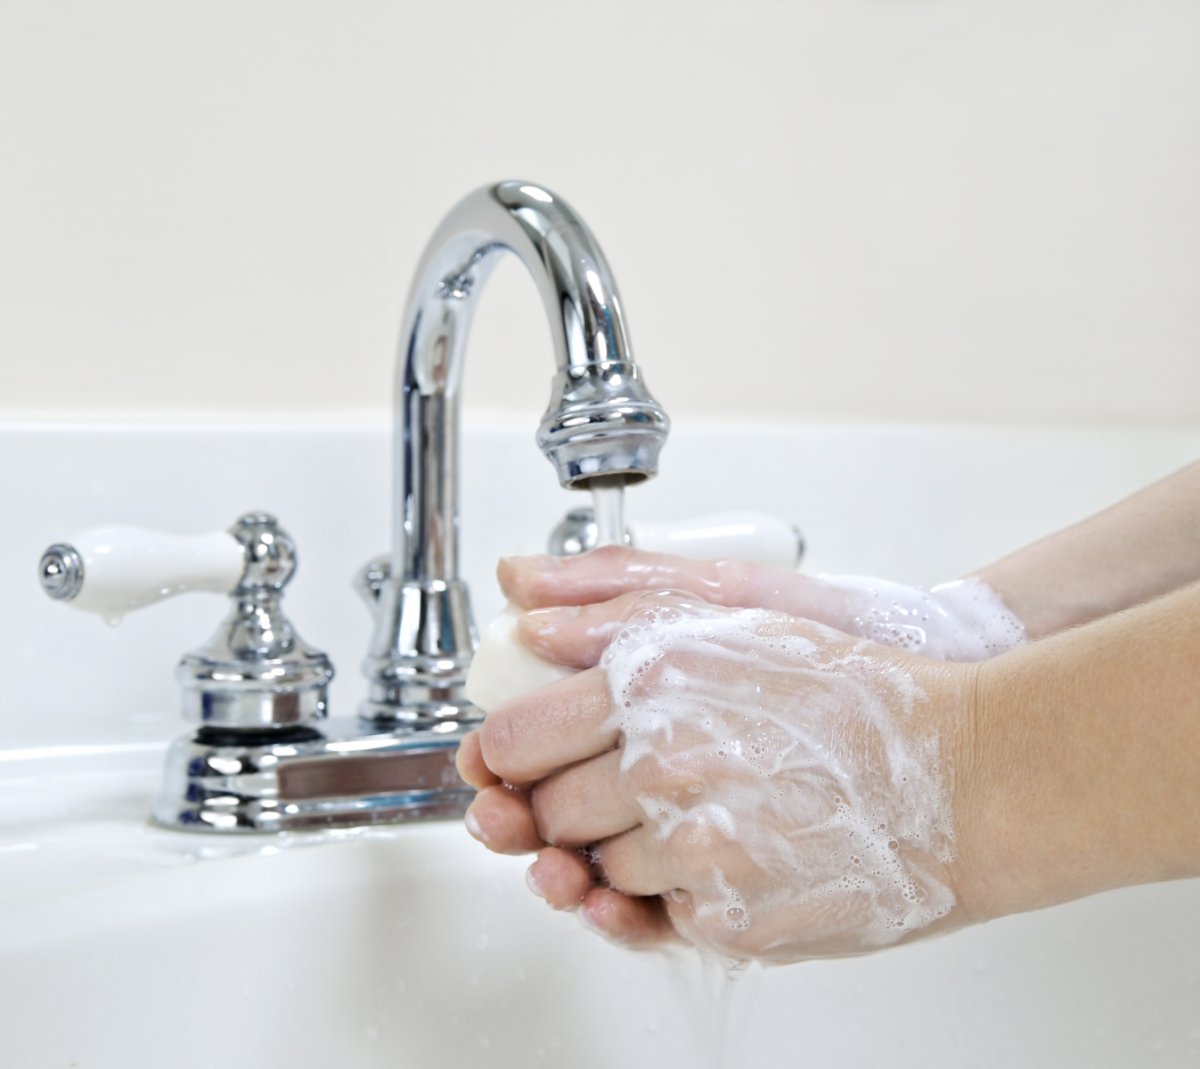 Bilde av hender som vaskes (illustrasjonsbilde)